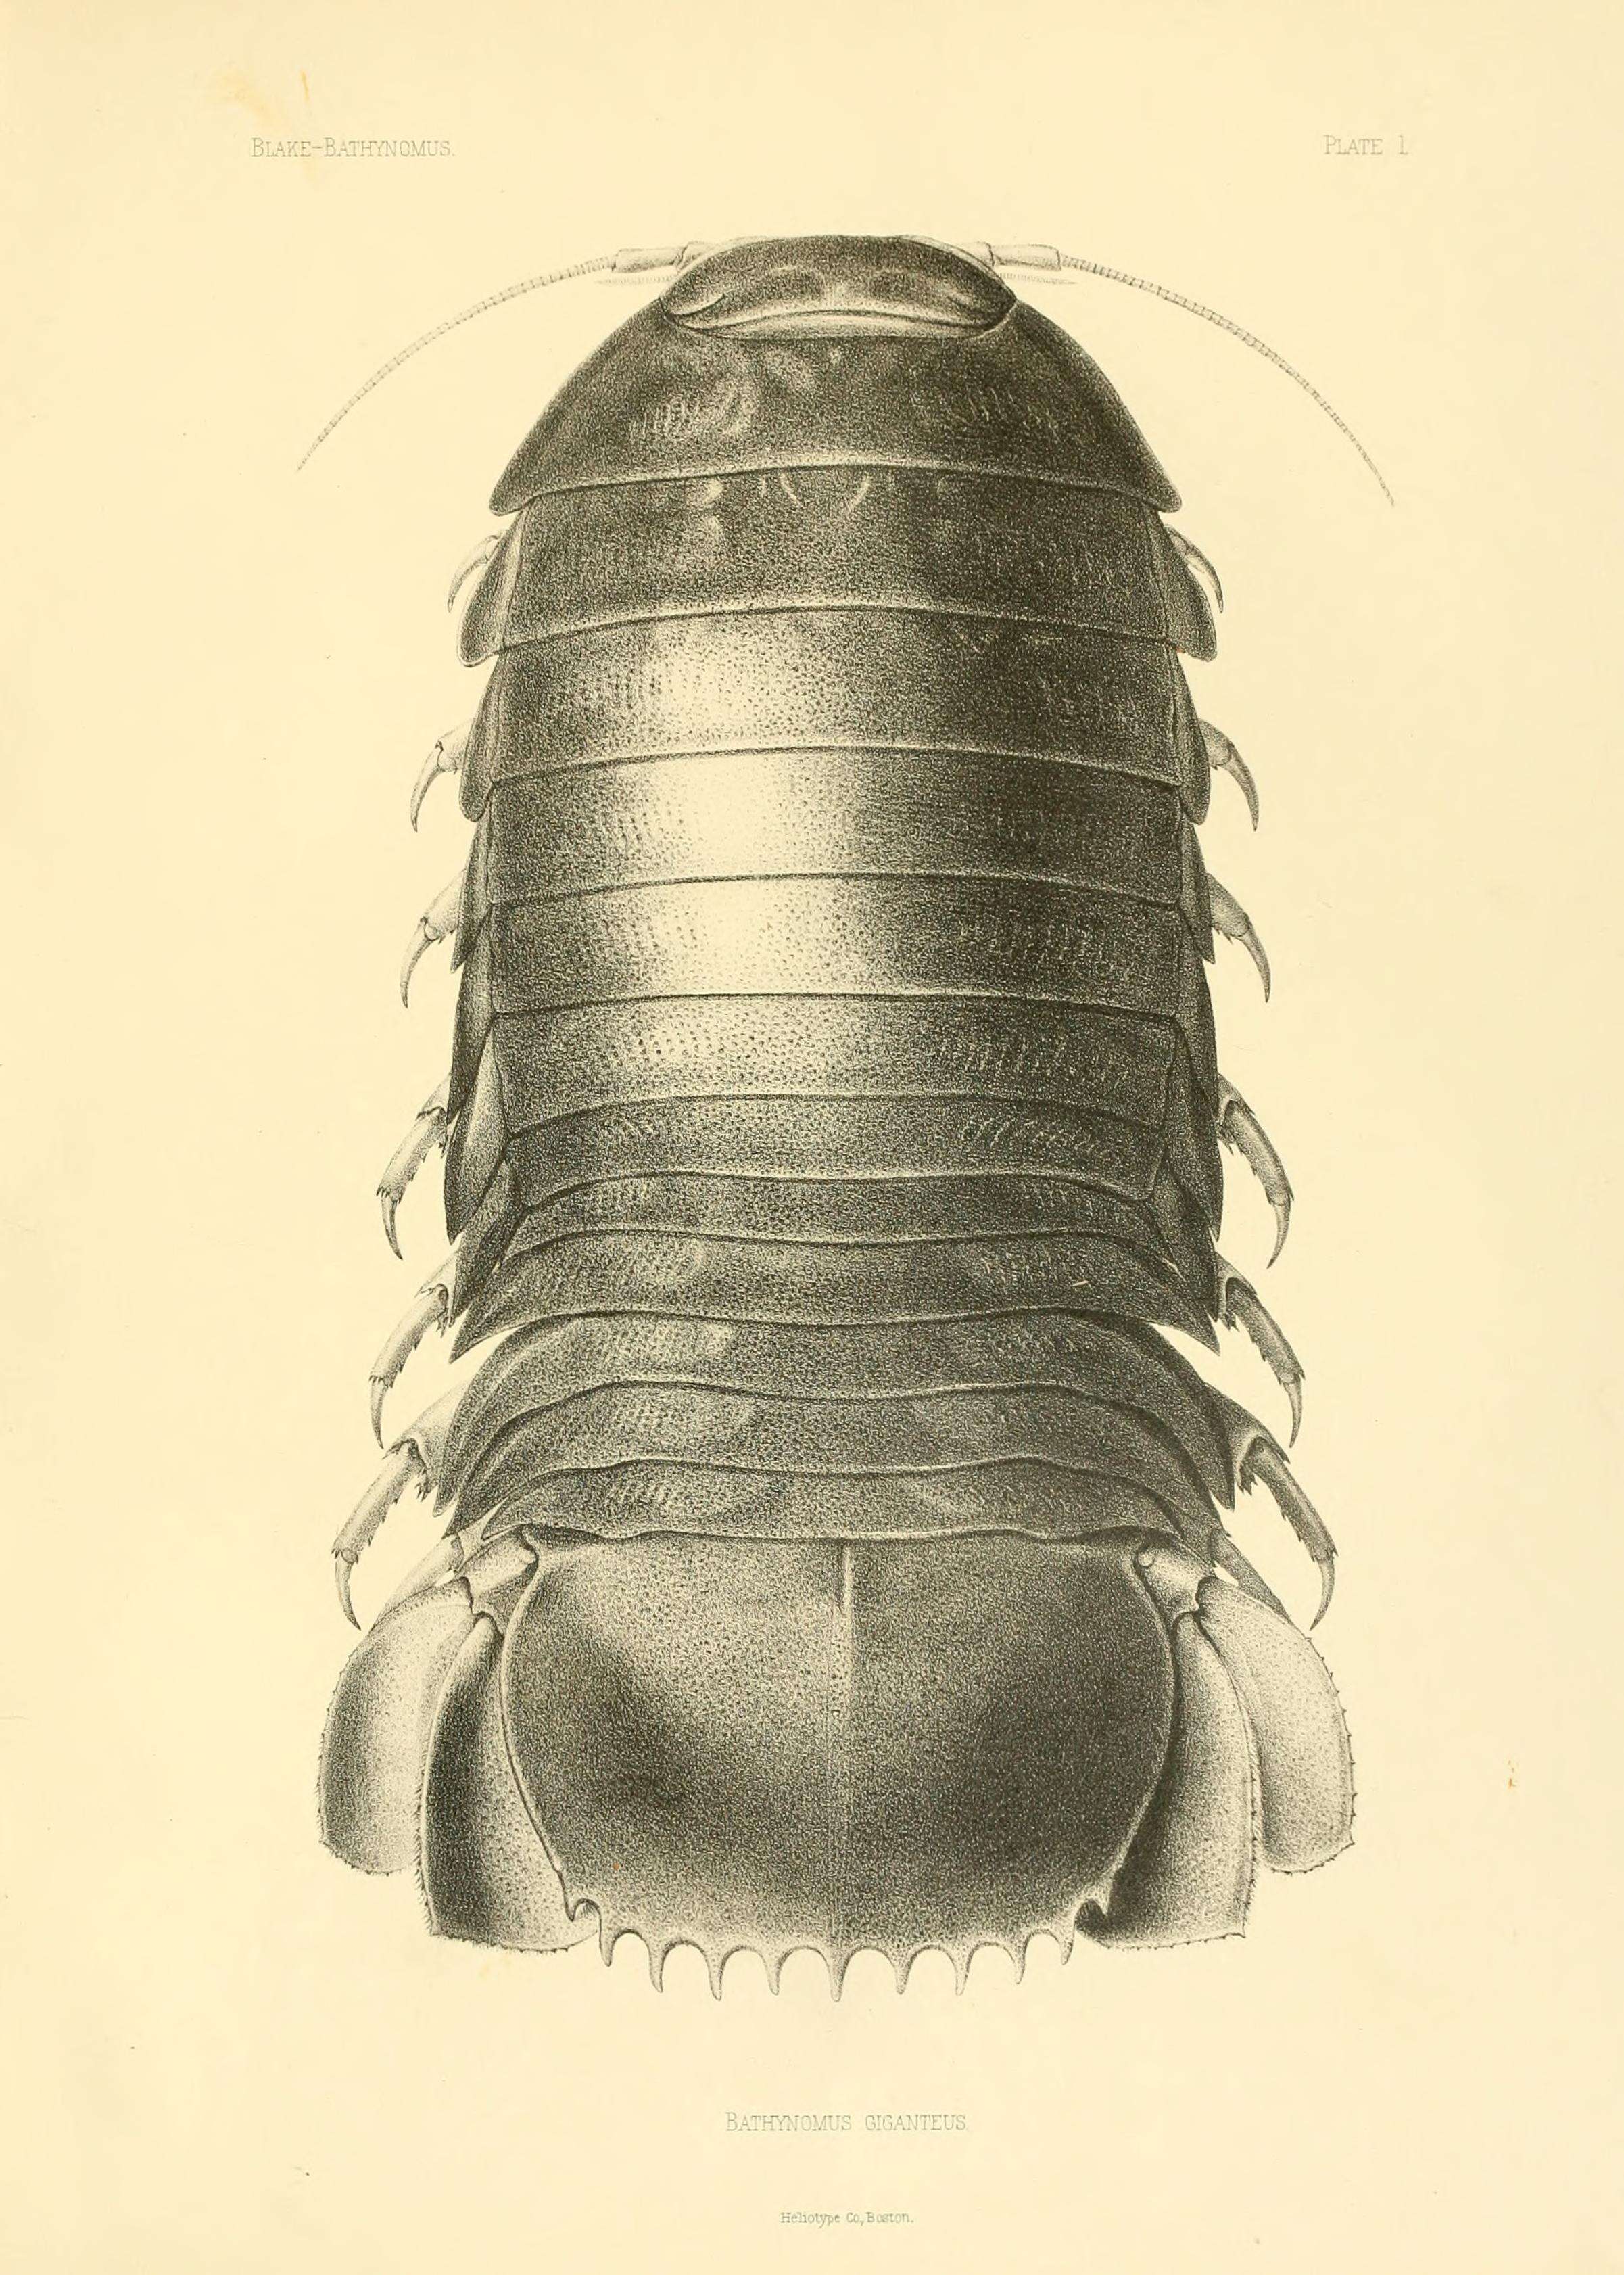 Image de Bathynomus A. Milne-Edwards 1879